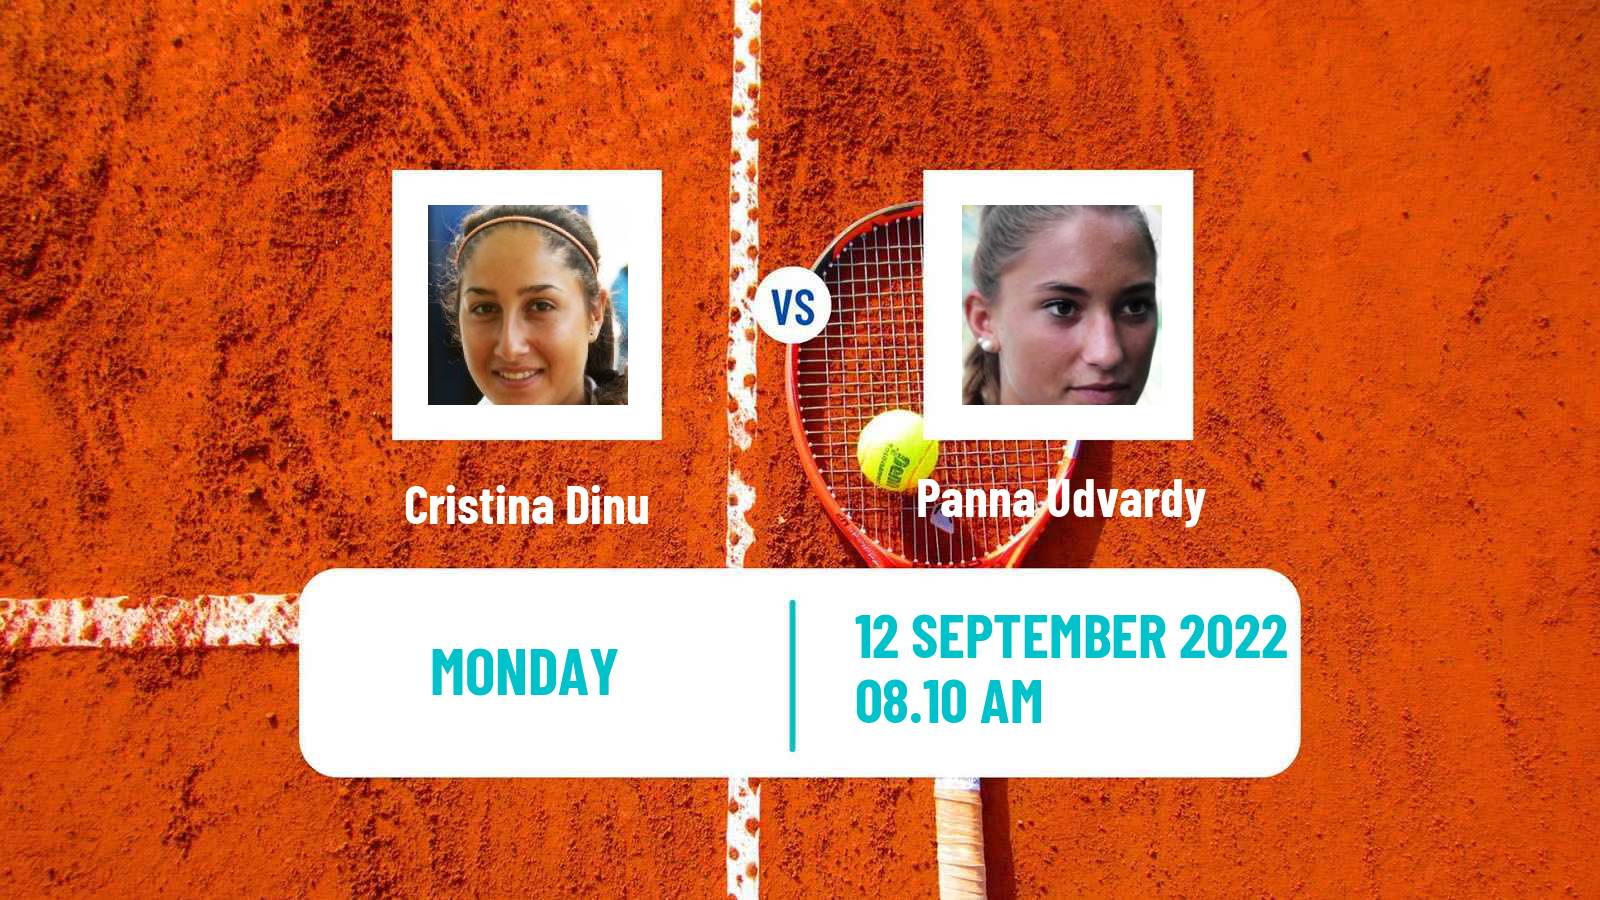 Tennis ATP Challenger Cristina Dinu - Panna Udvardy